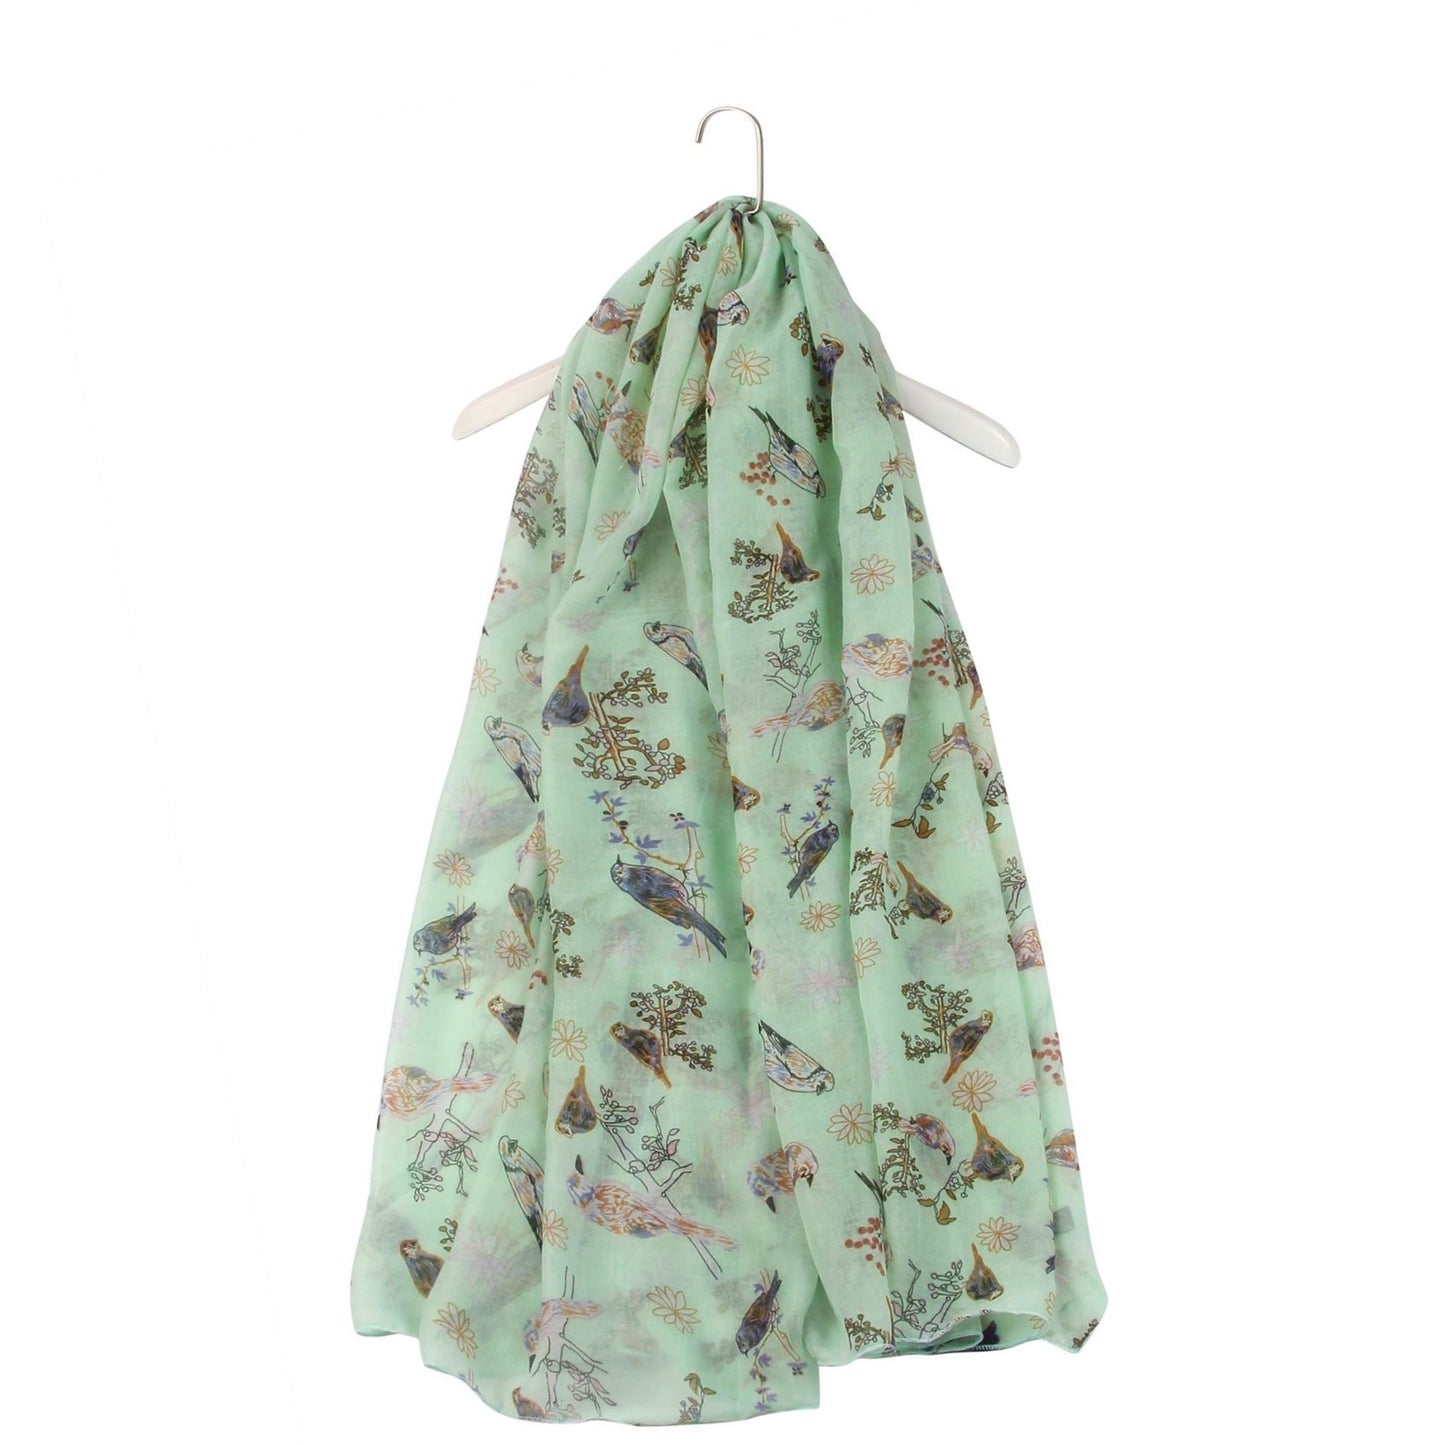 Šála-šátek se vzorem ptáků a květin, mátově zelená, 90 cm x 180 cm